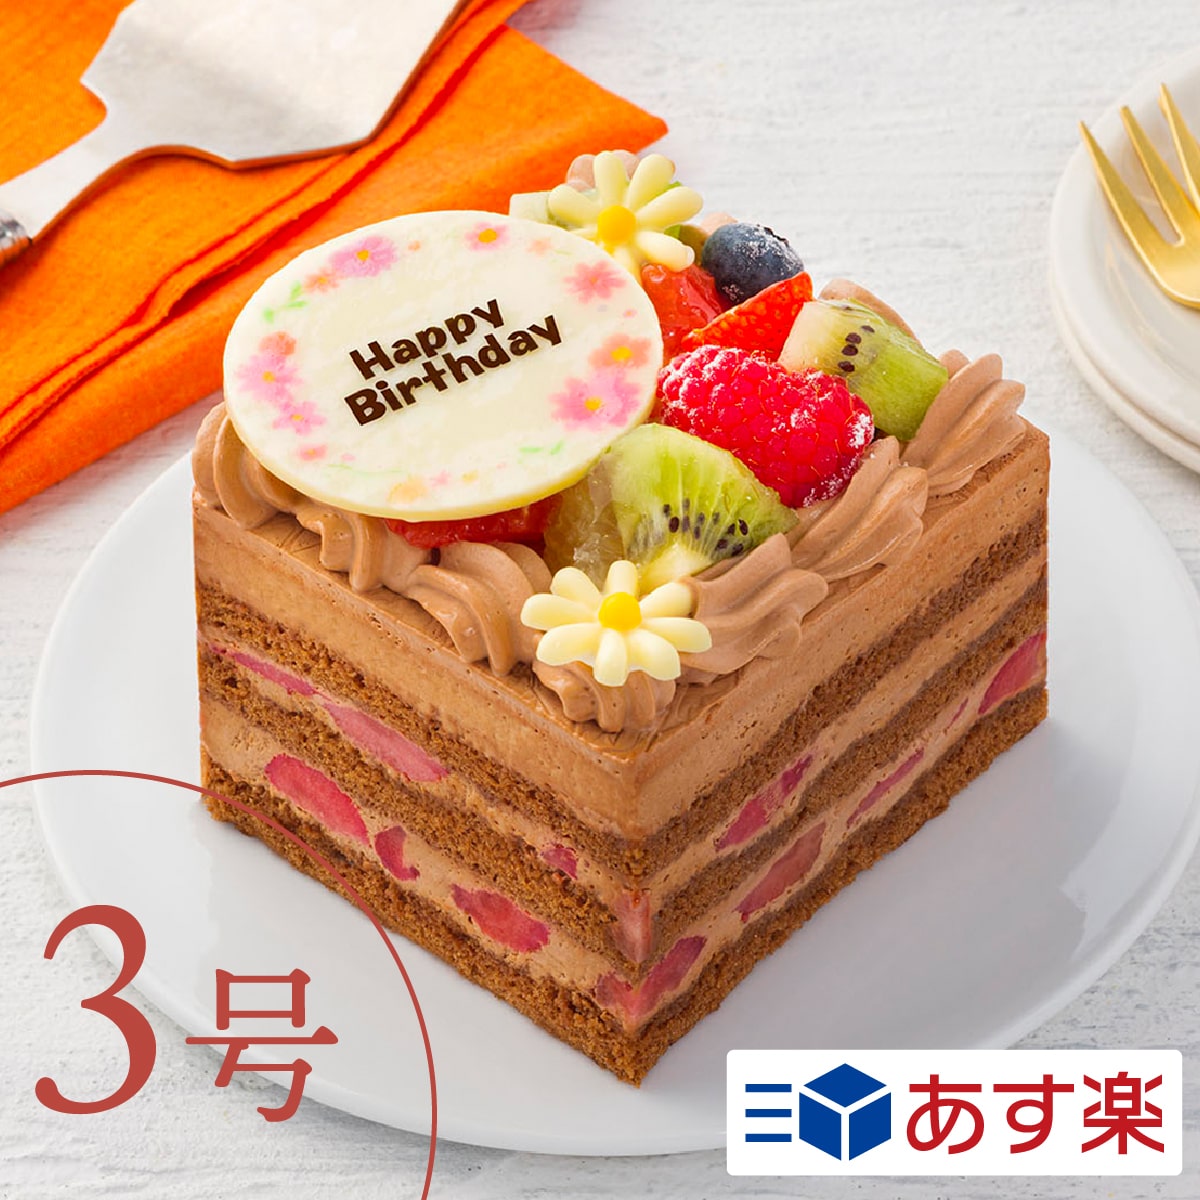 市場 写真ケーキ 3 4人向け バースデーケーキ フルーツいっぱいショート プリントケーキ 誕生日ケーキ イラストケーキ 写真プレート あす楽 4号